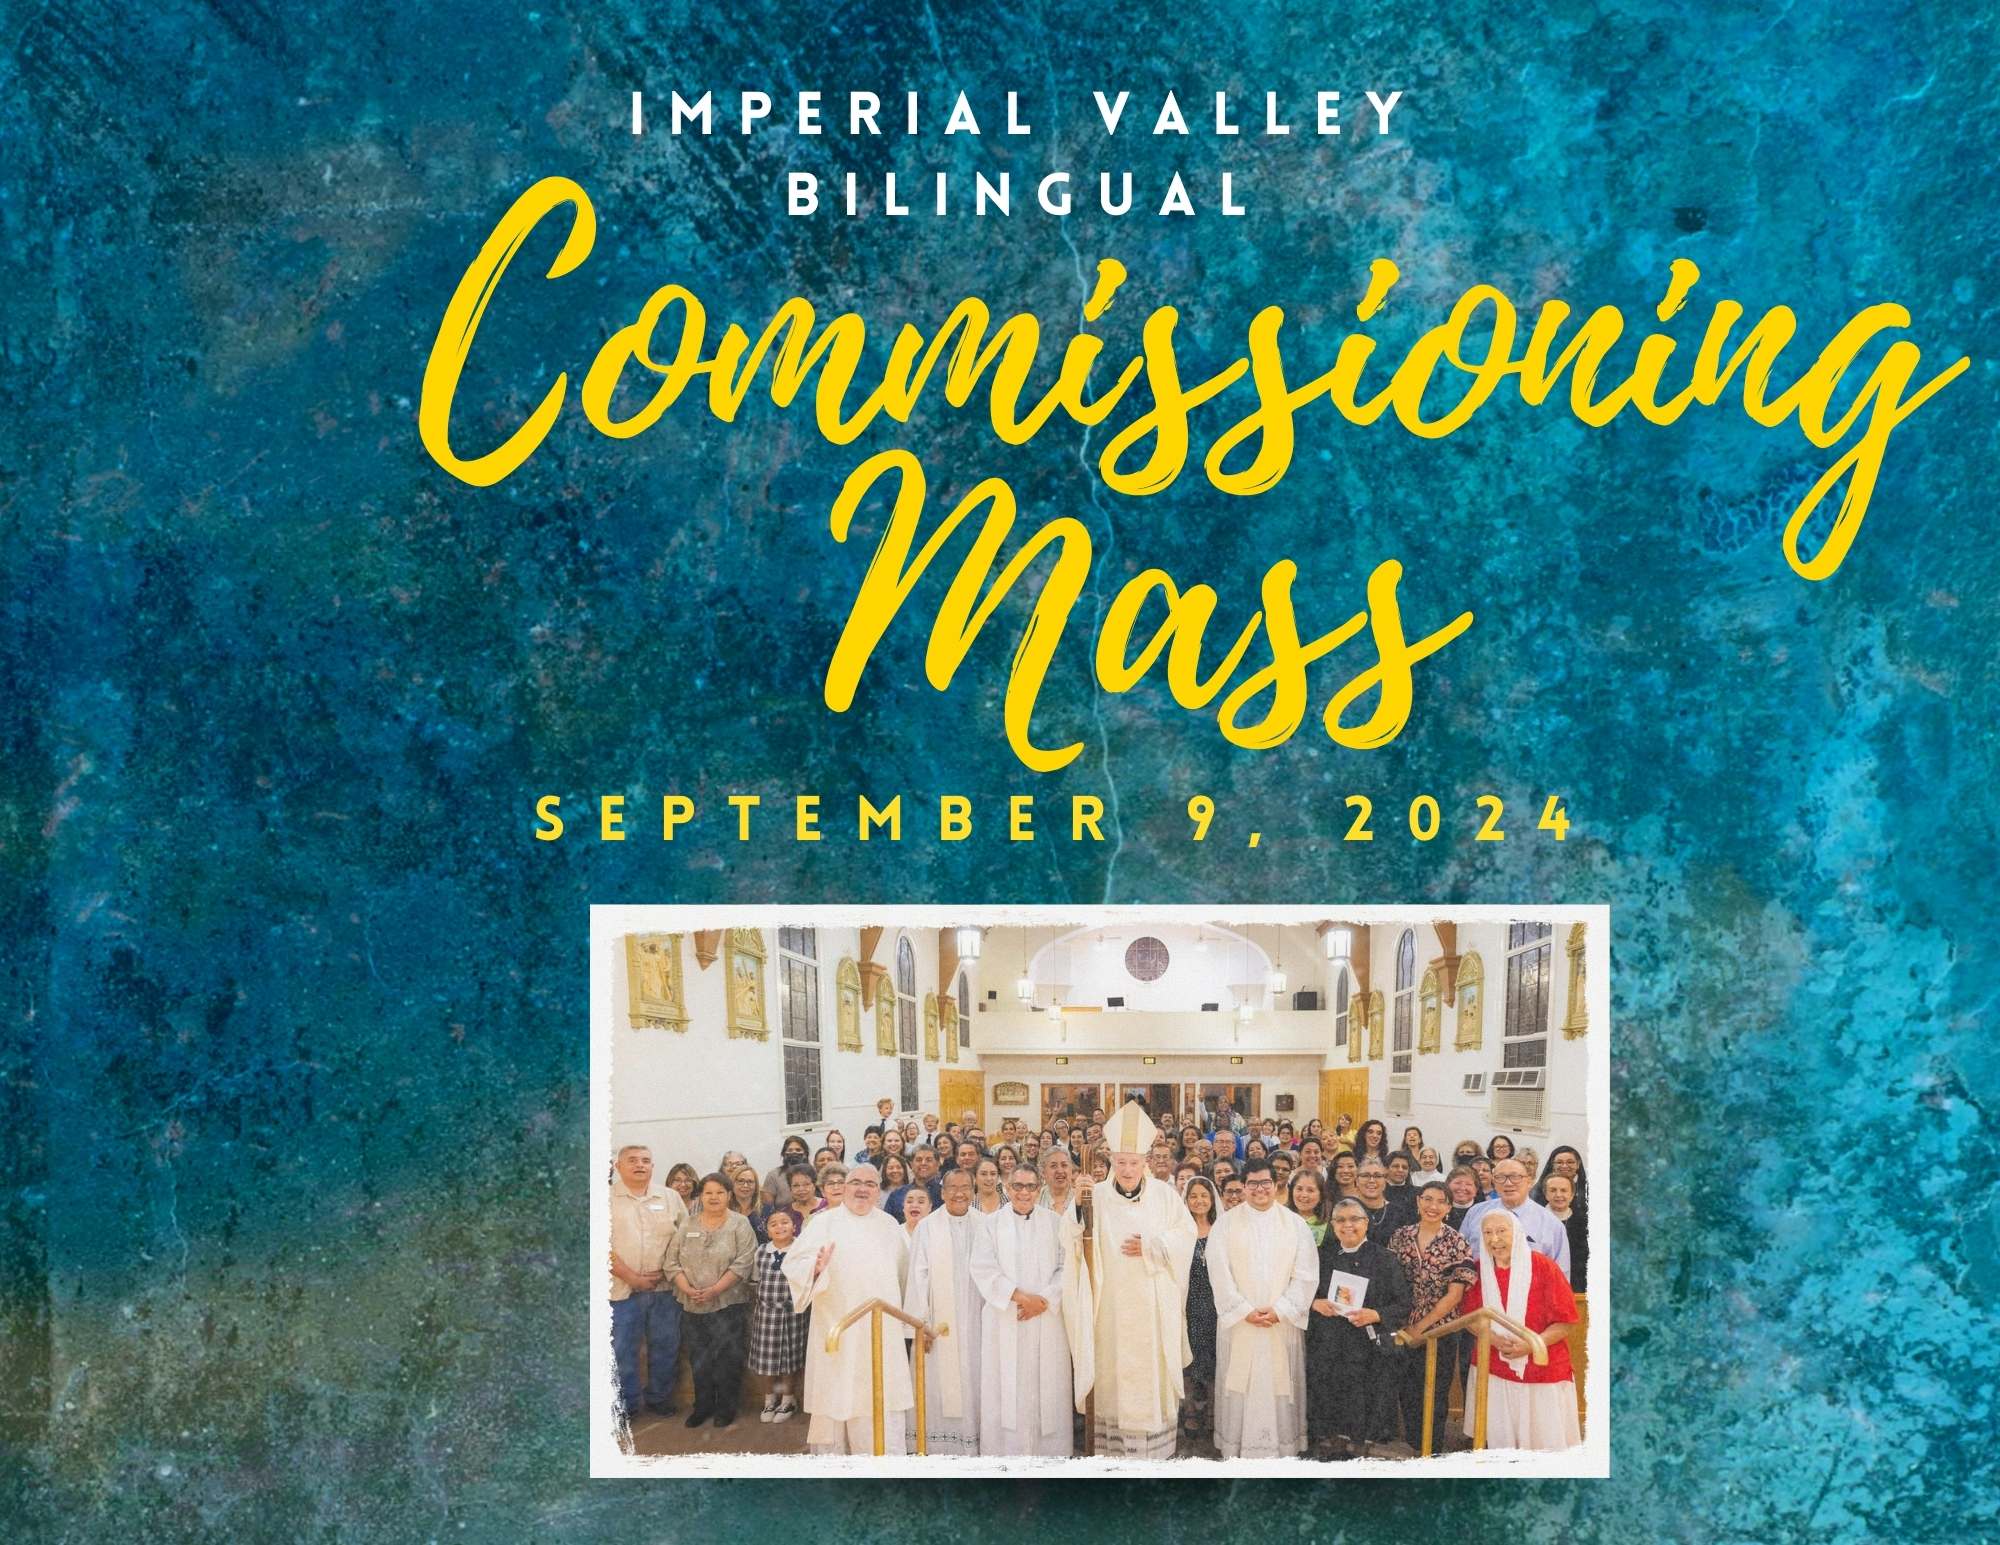 IV-Bilingual Commissioning Mass